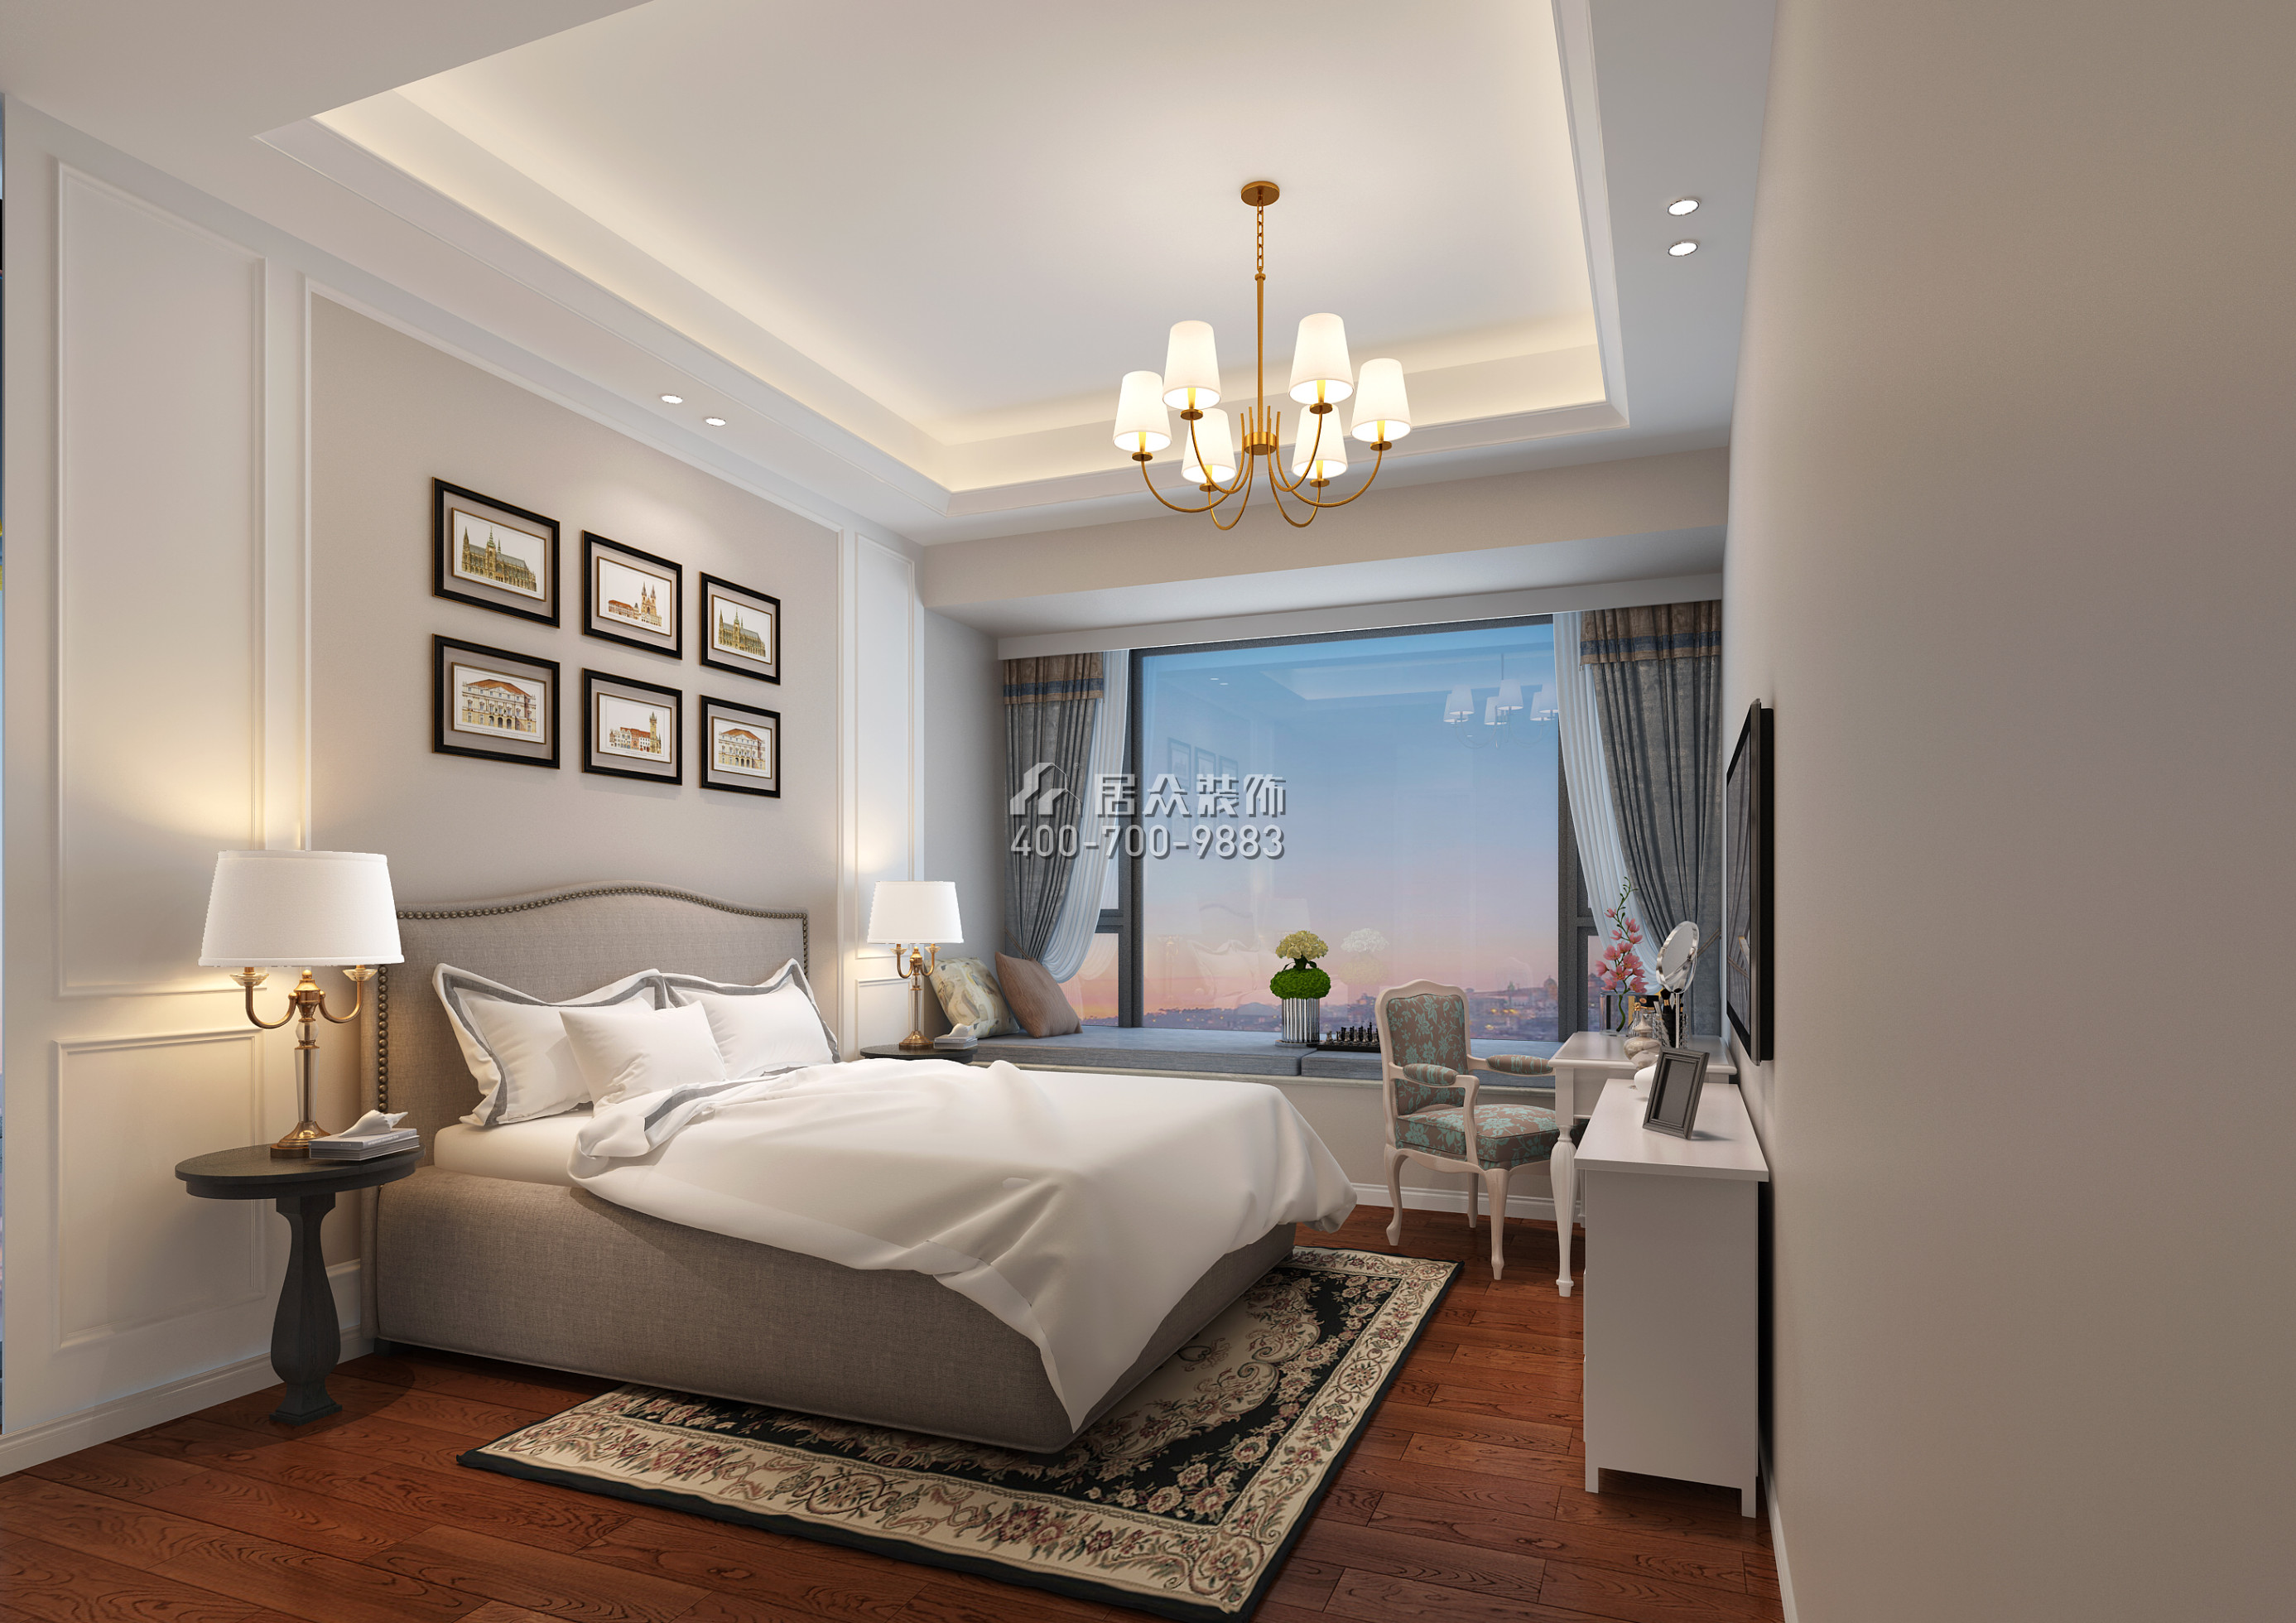 華潤城潤府166平方米地中海風格平層戶型臥室裝修效果圖